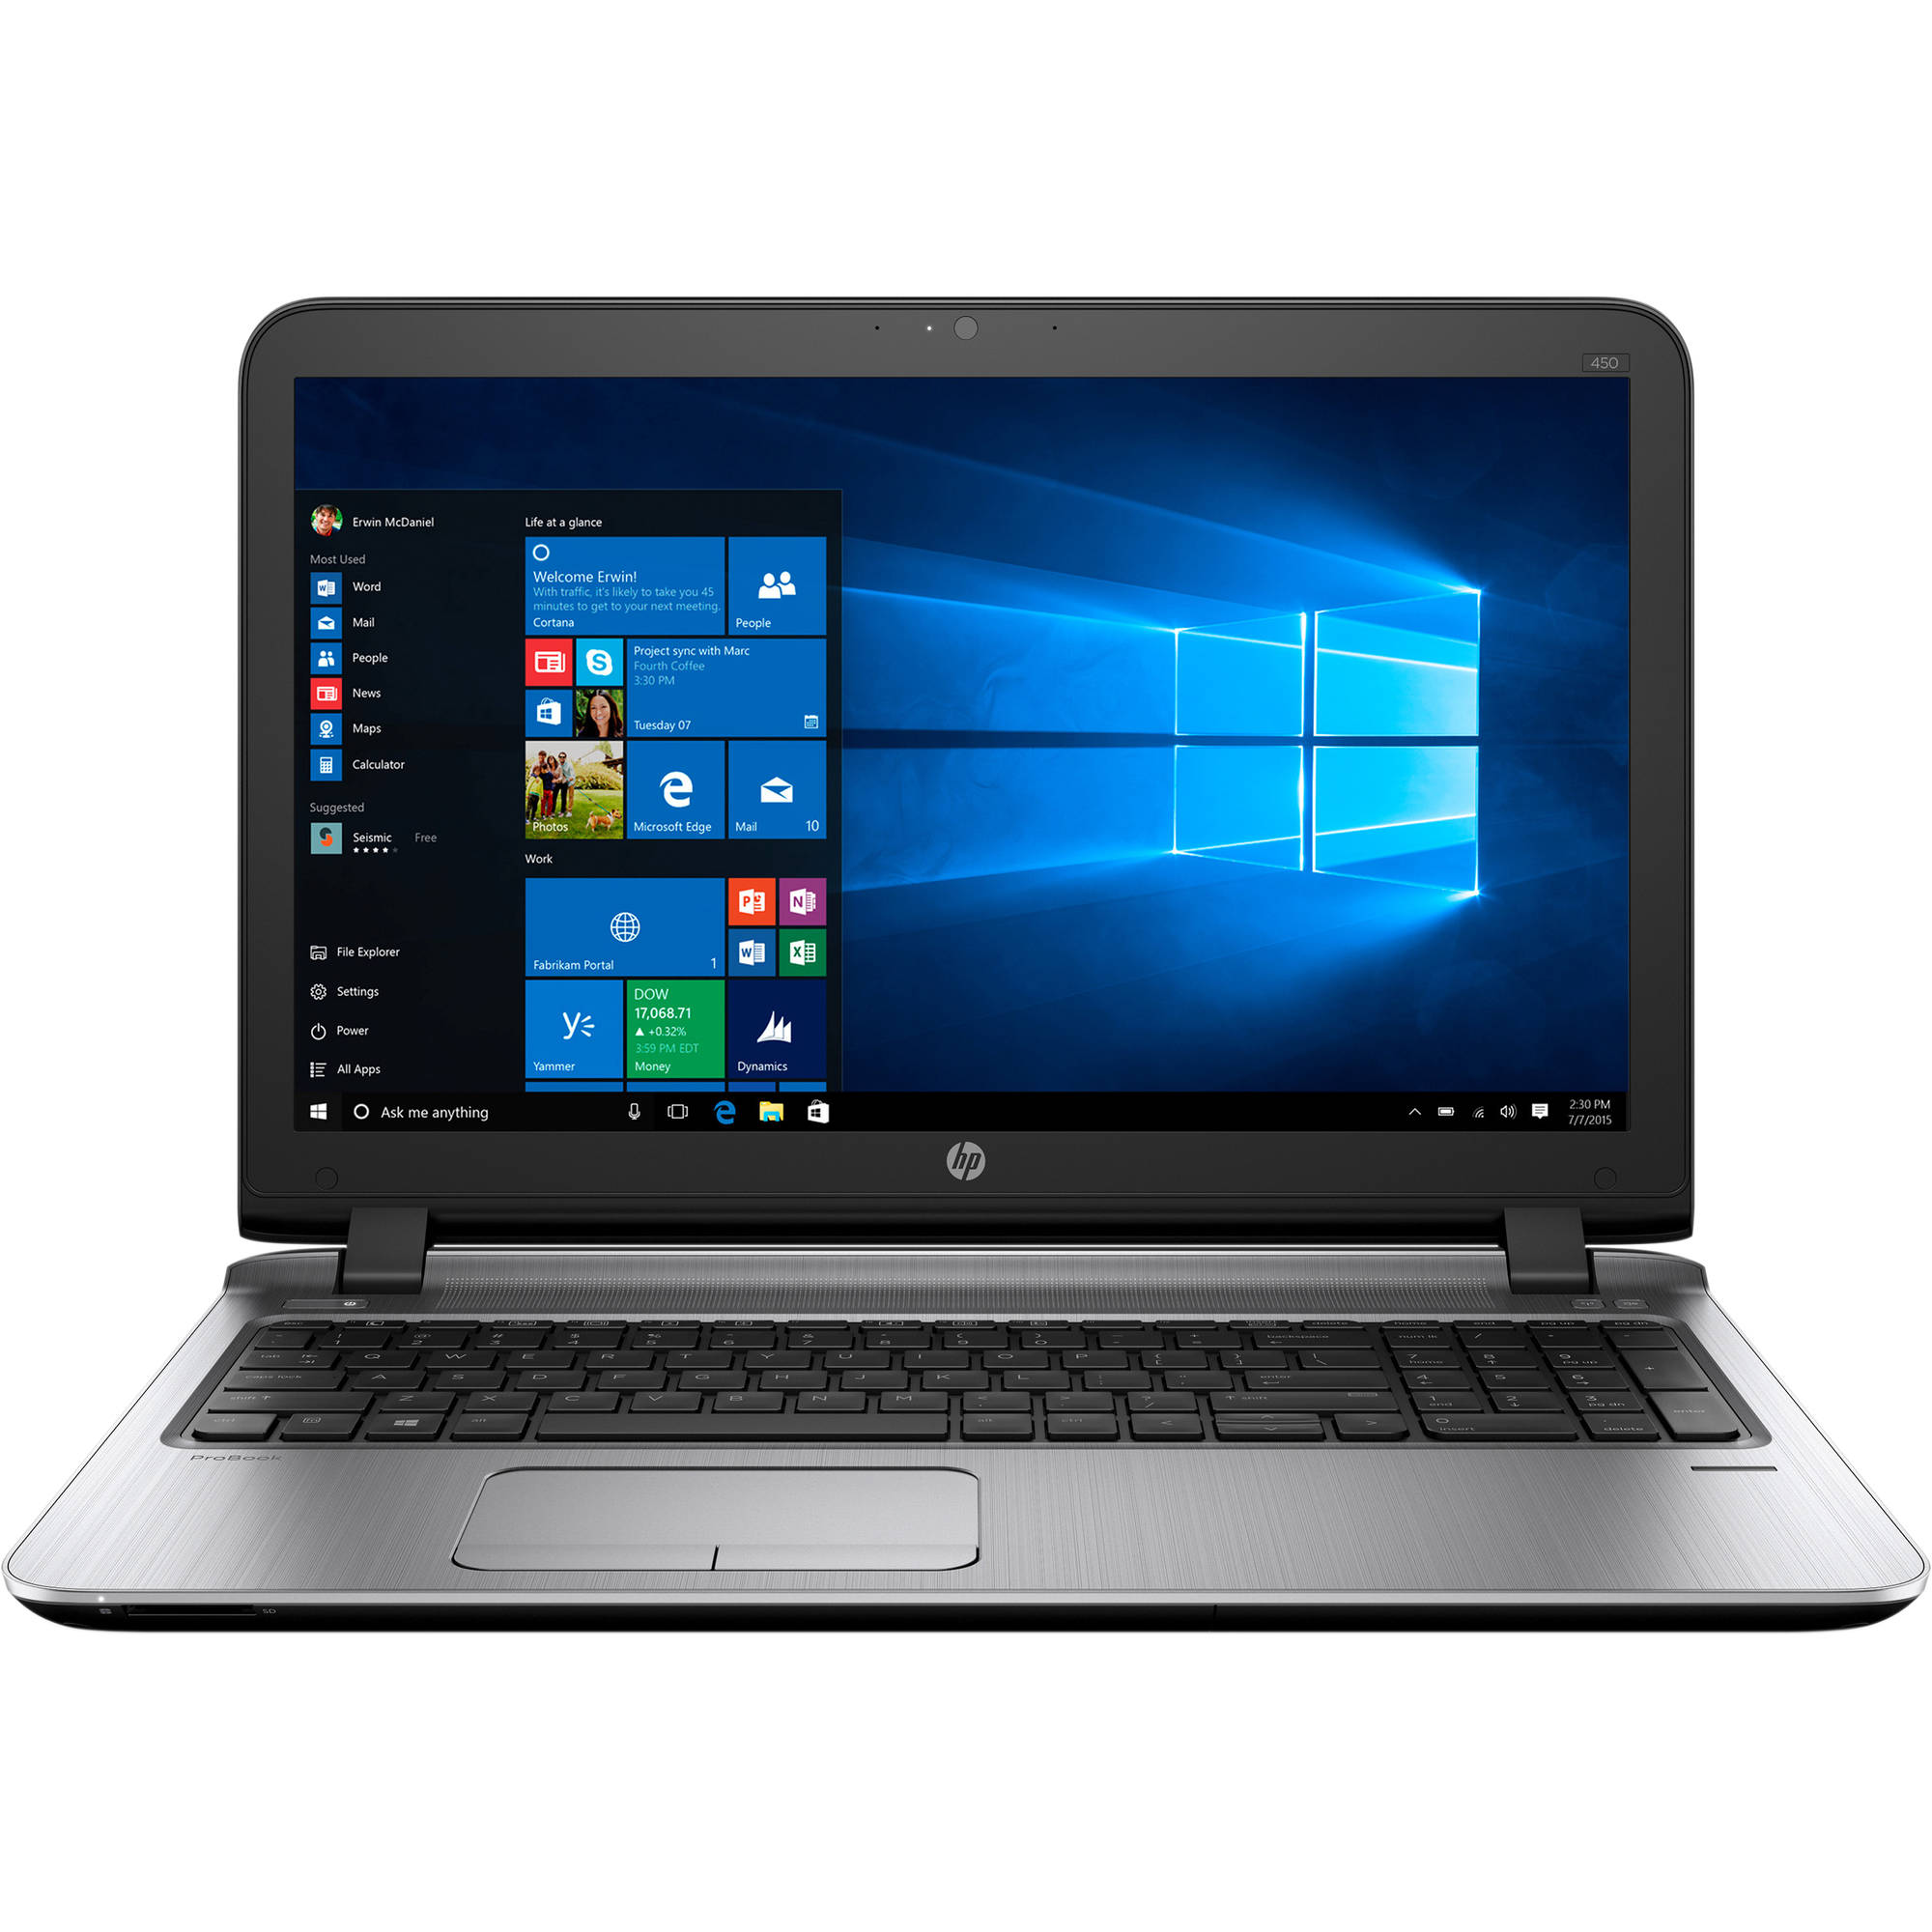 Laptop HP Probook 450 G3, Intel Core i7-6500U, 8GB DDR4, HDD 1TB, Intel HD Graphics, Windows 7 Pro + Windows 10 Pro